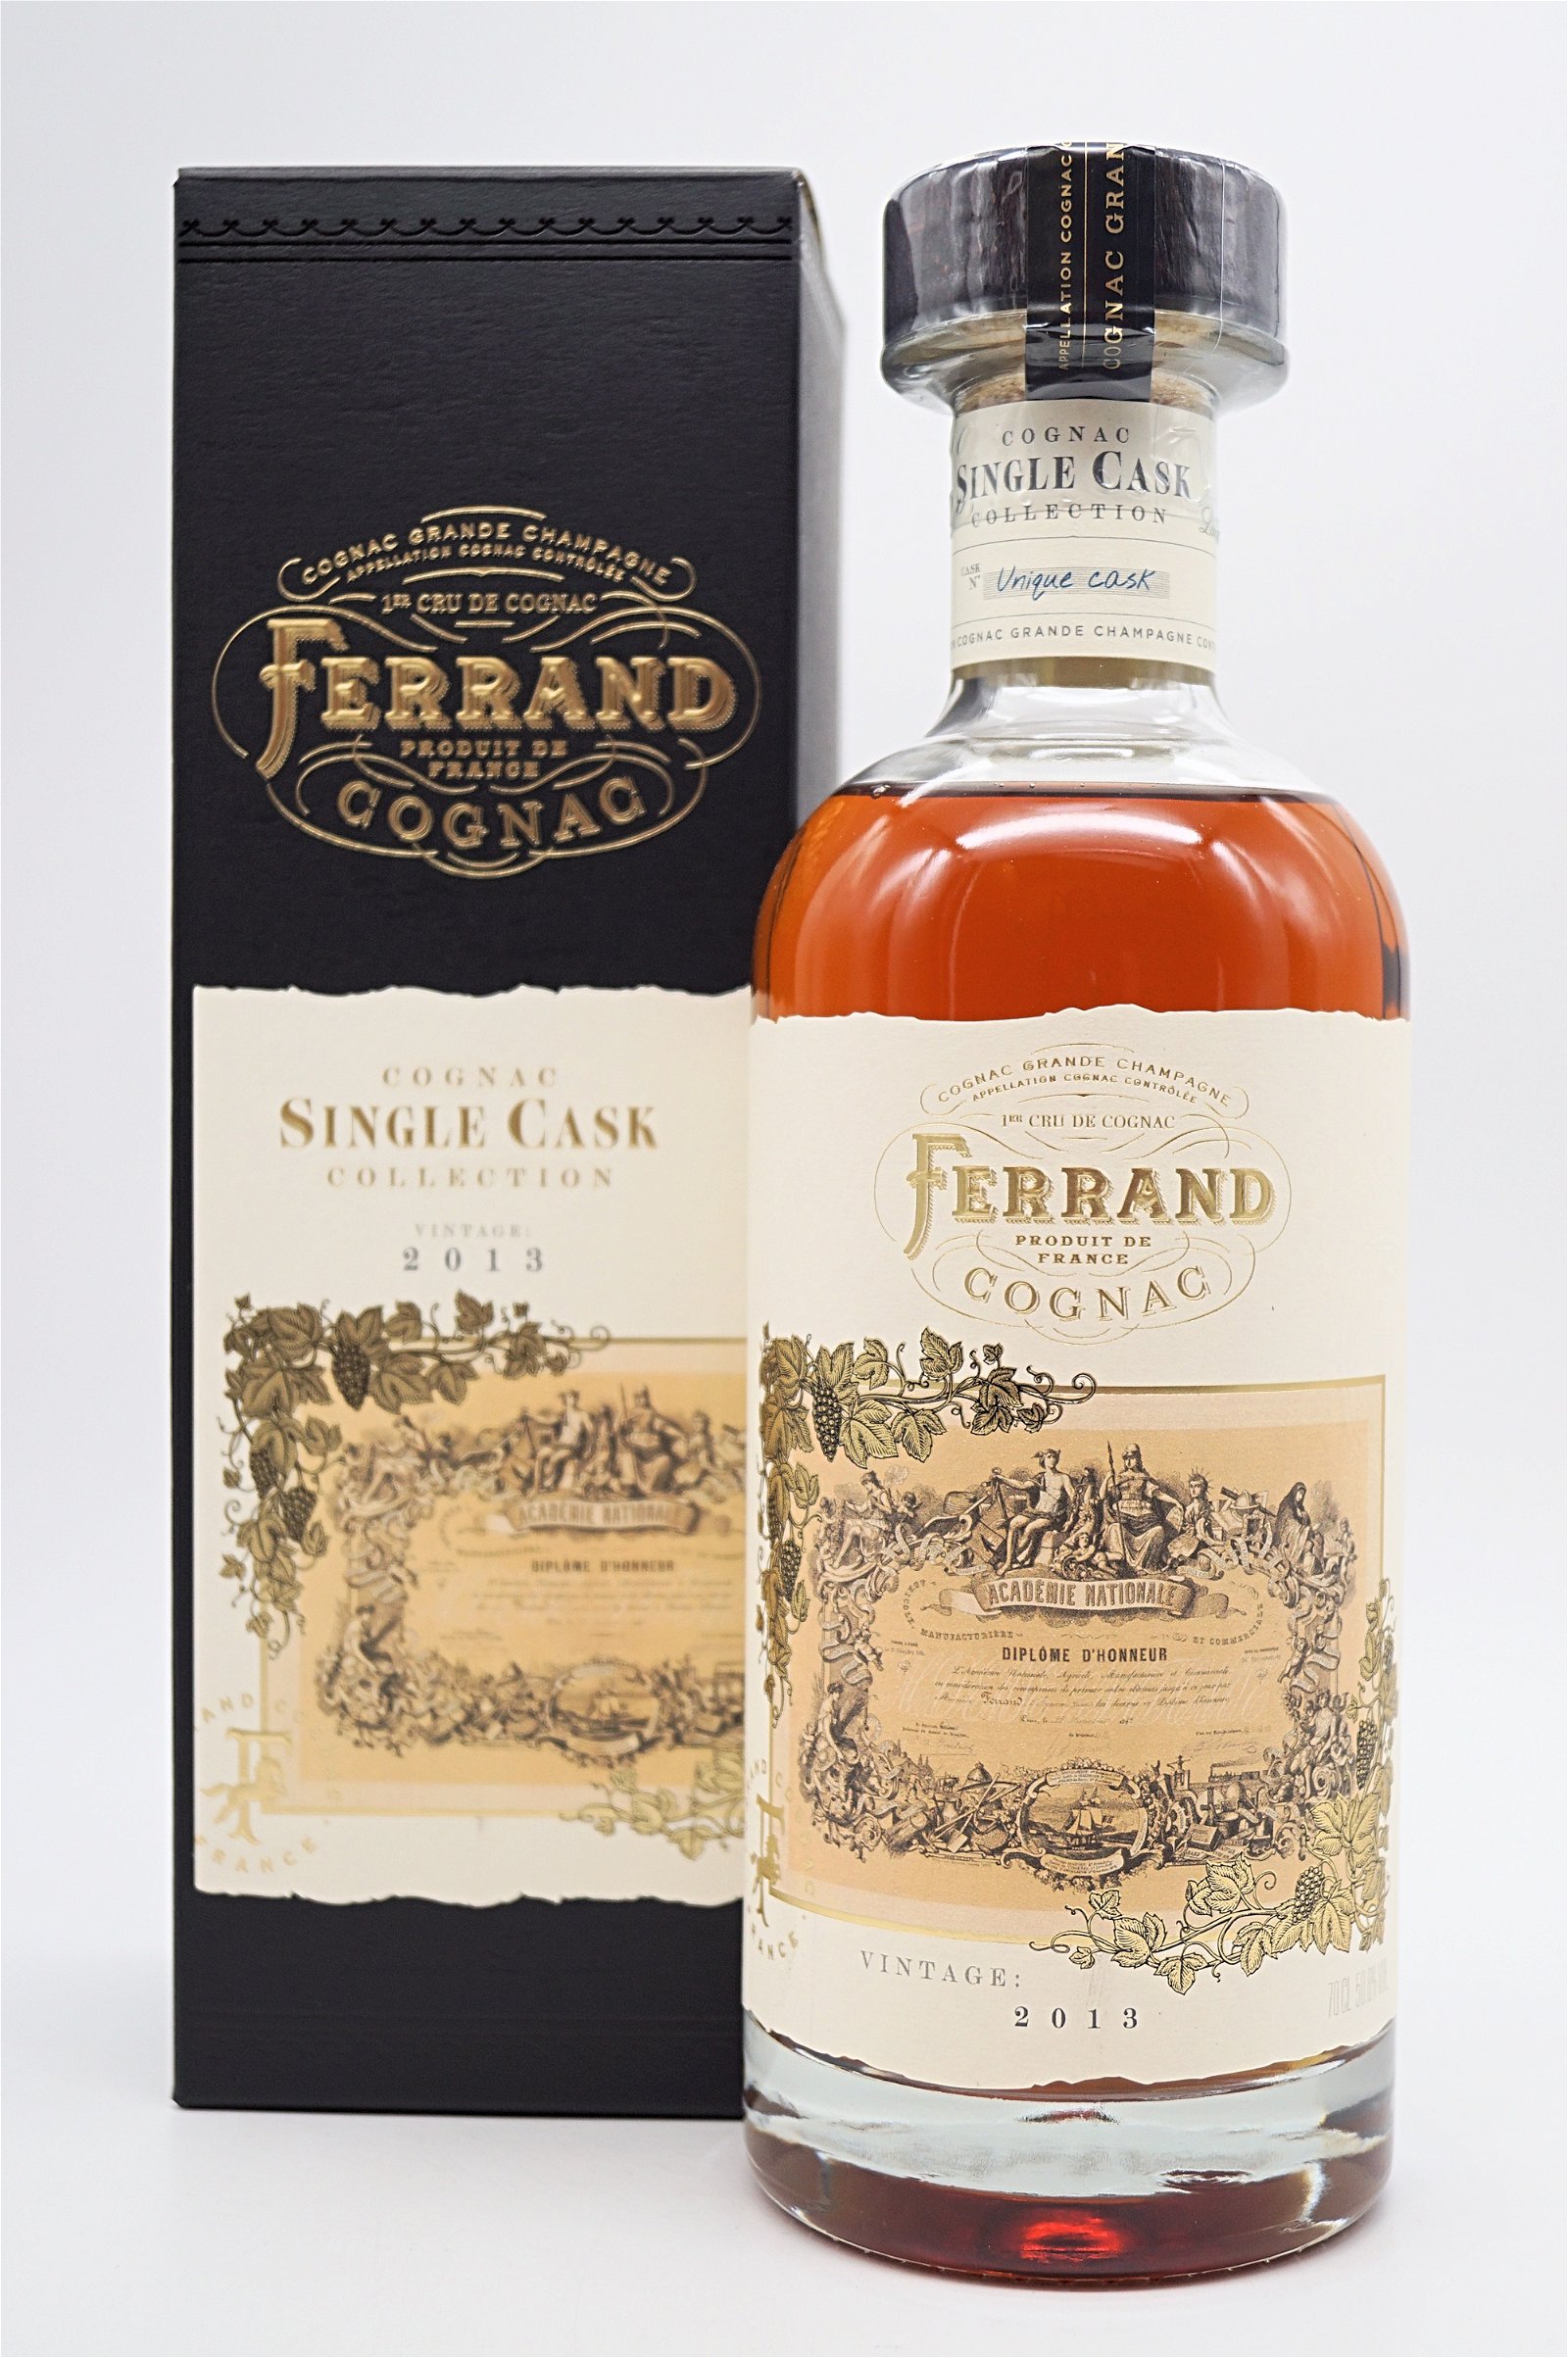 Pierre Ferrand Single Cask Collection Vintage 2013 Cognac